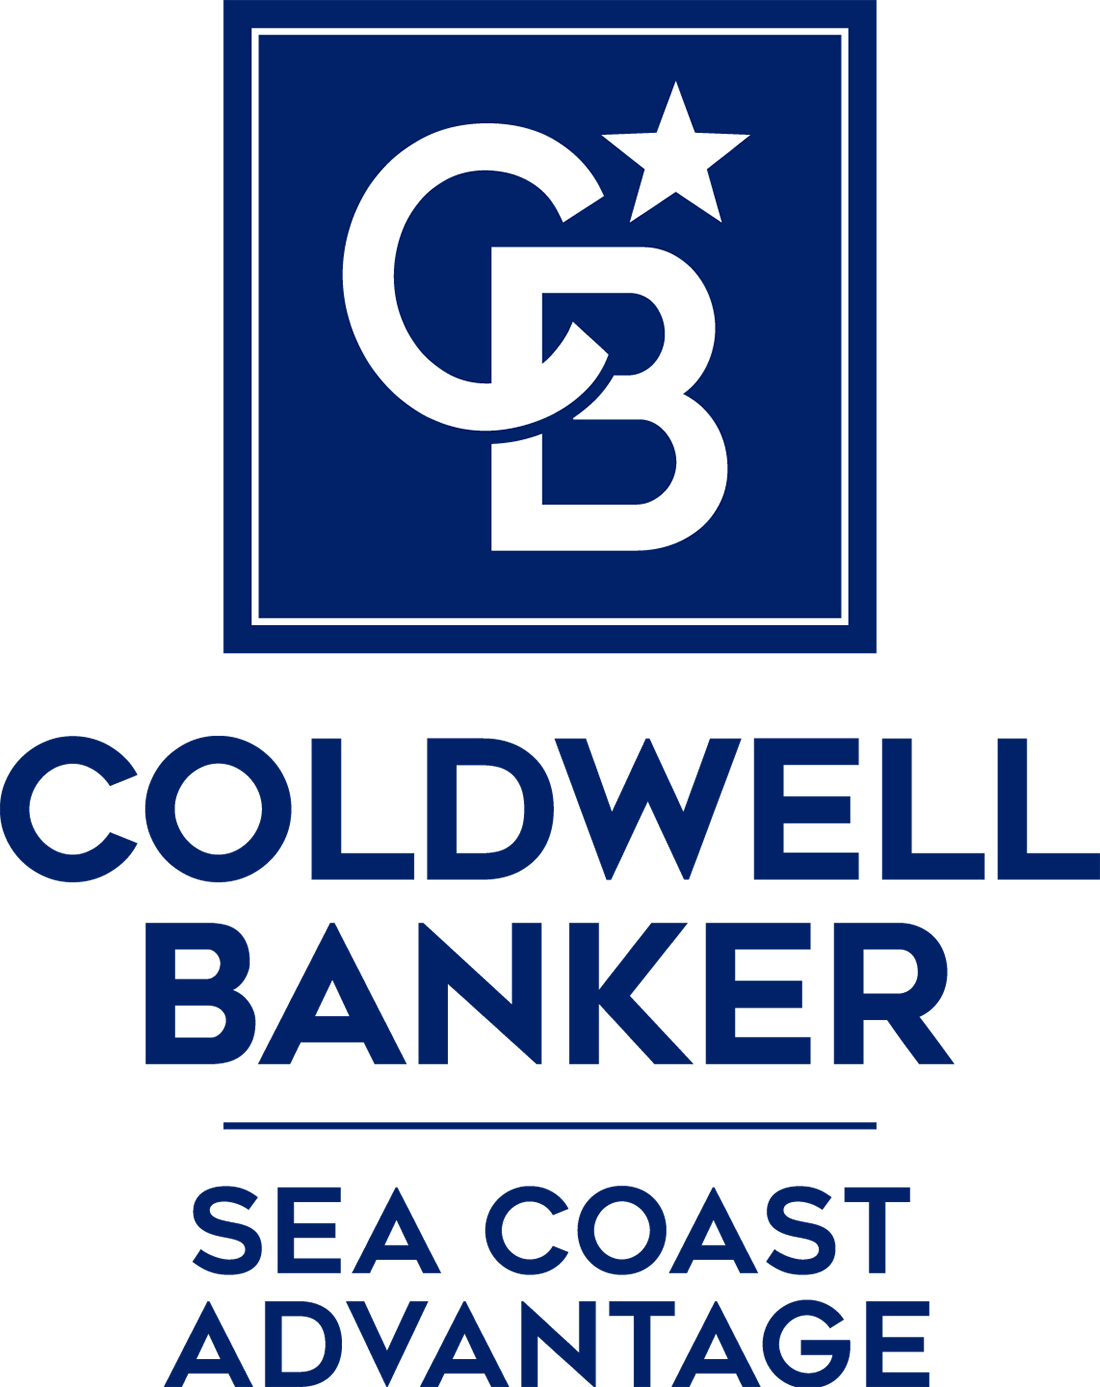 April Wolk - Coldwell Banker Chicora Logo